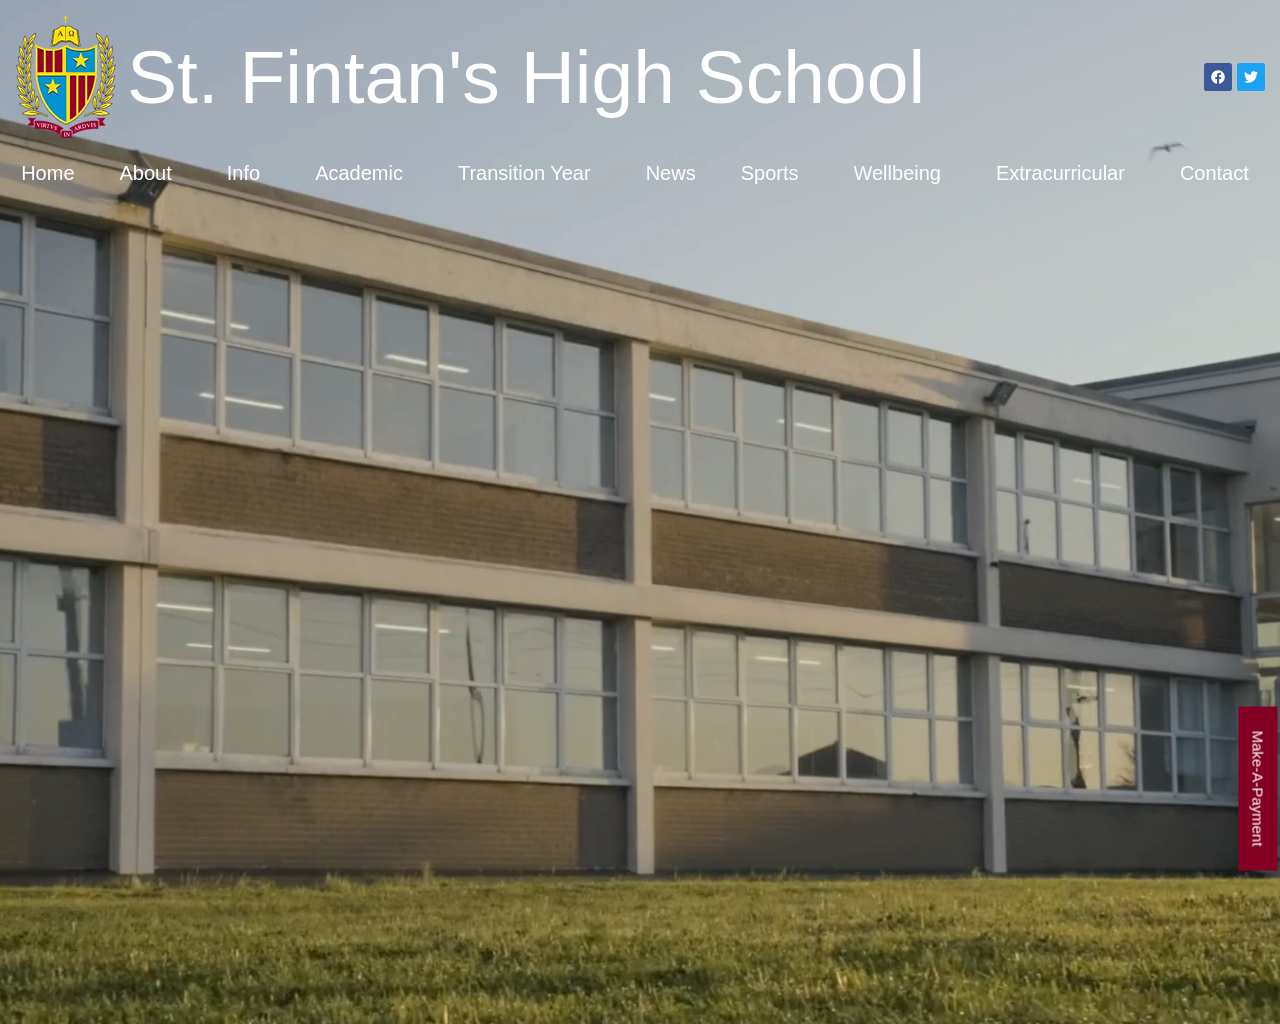 St. Fintan's High School